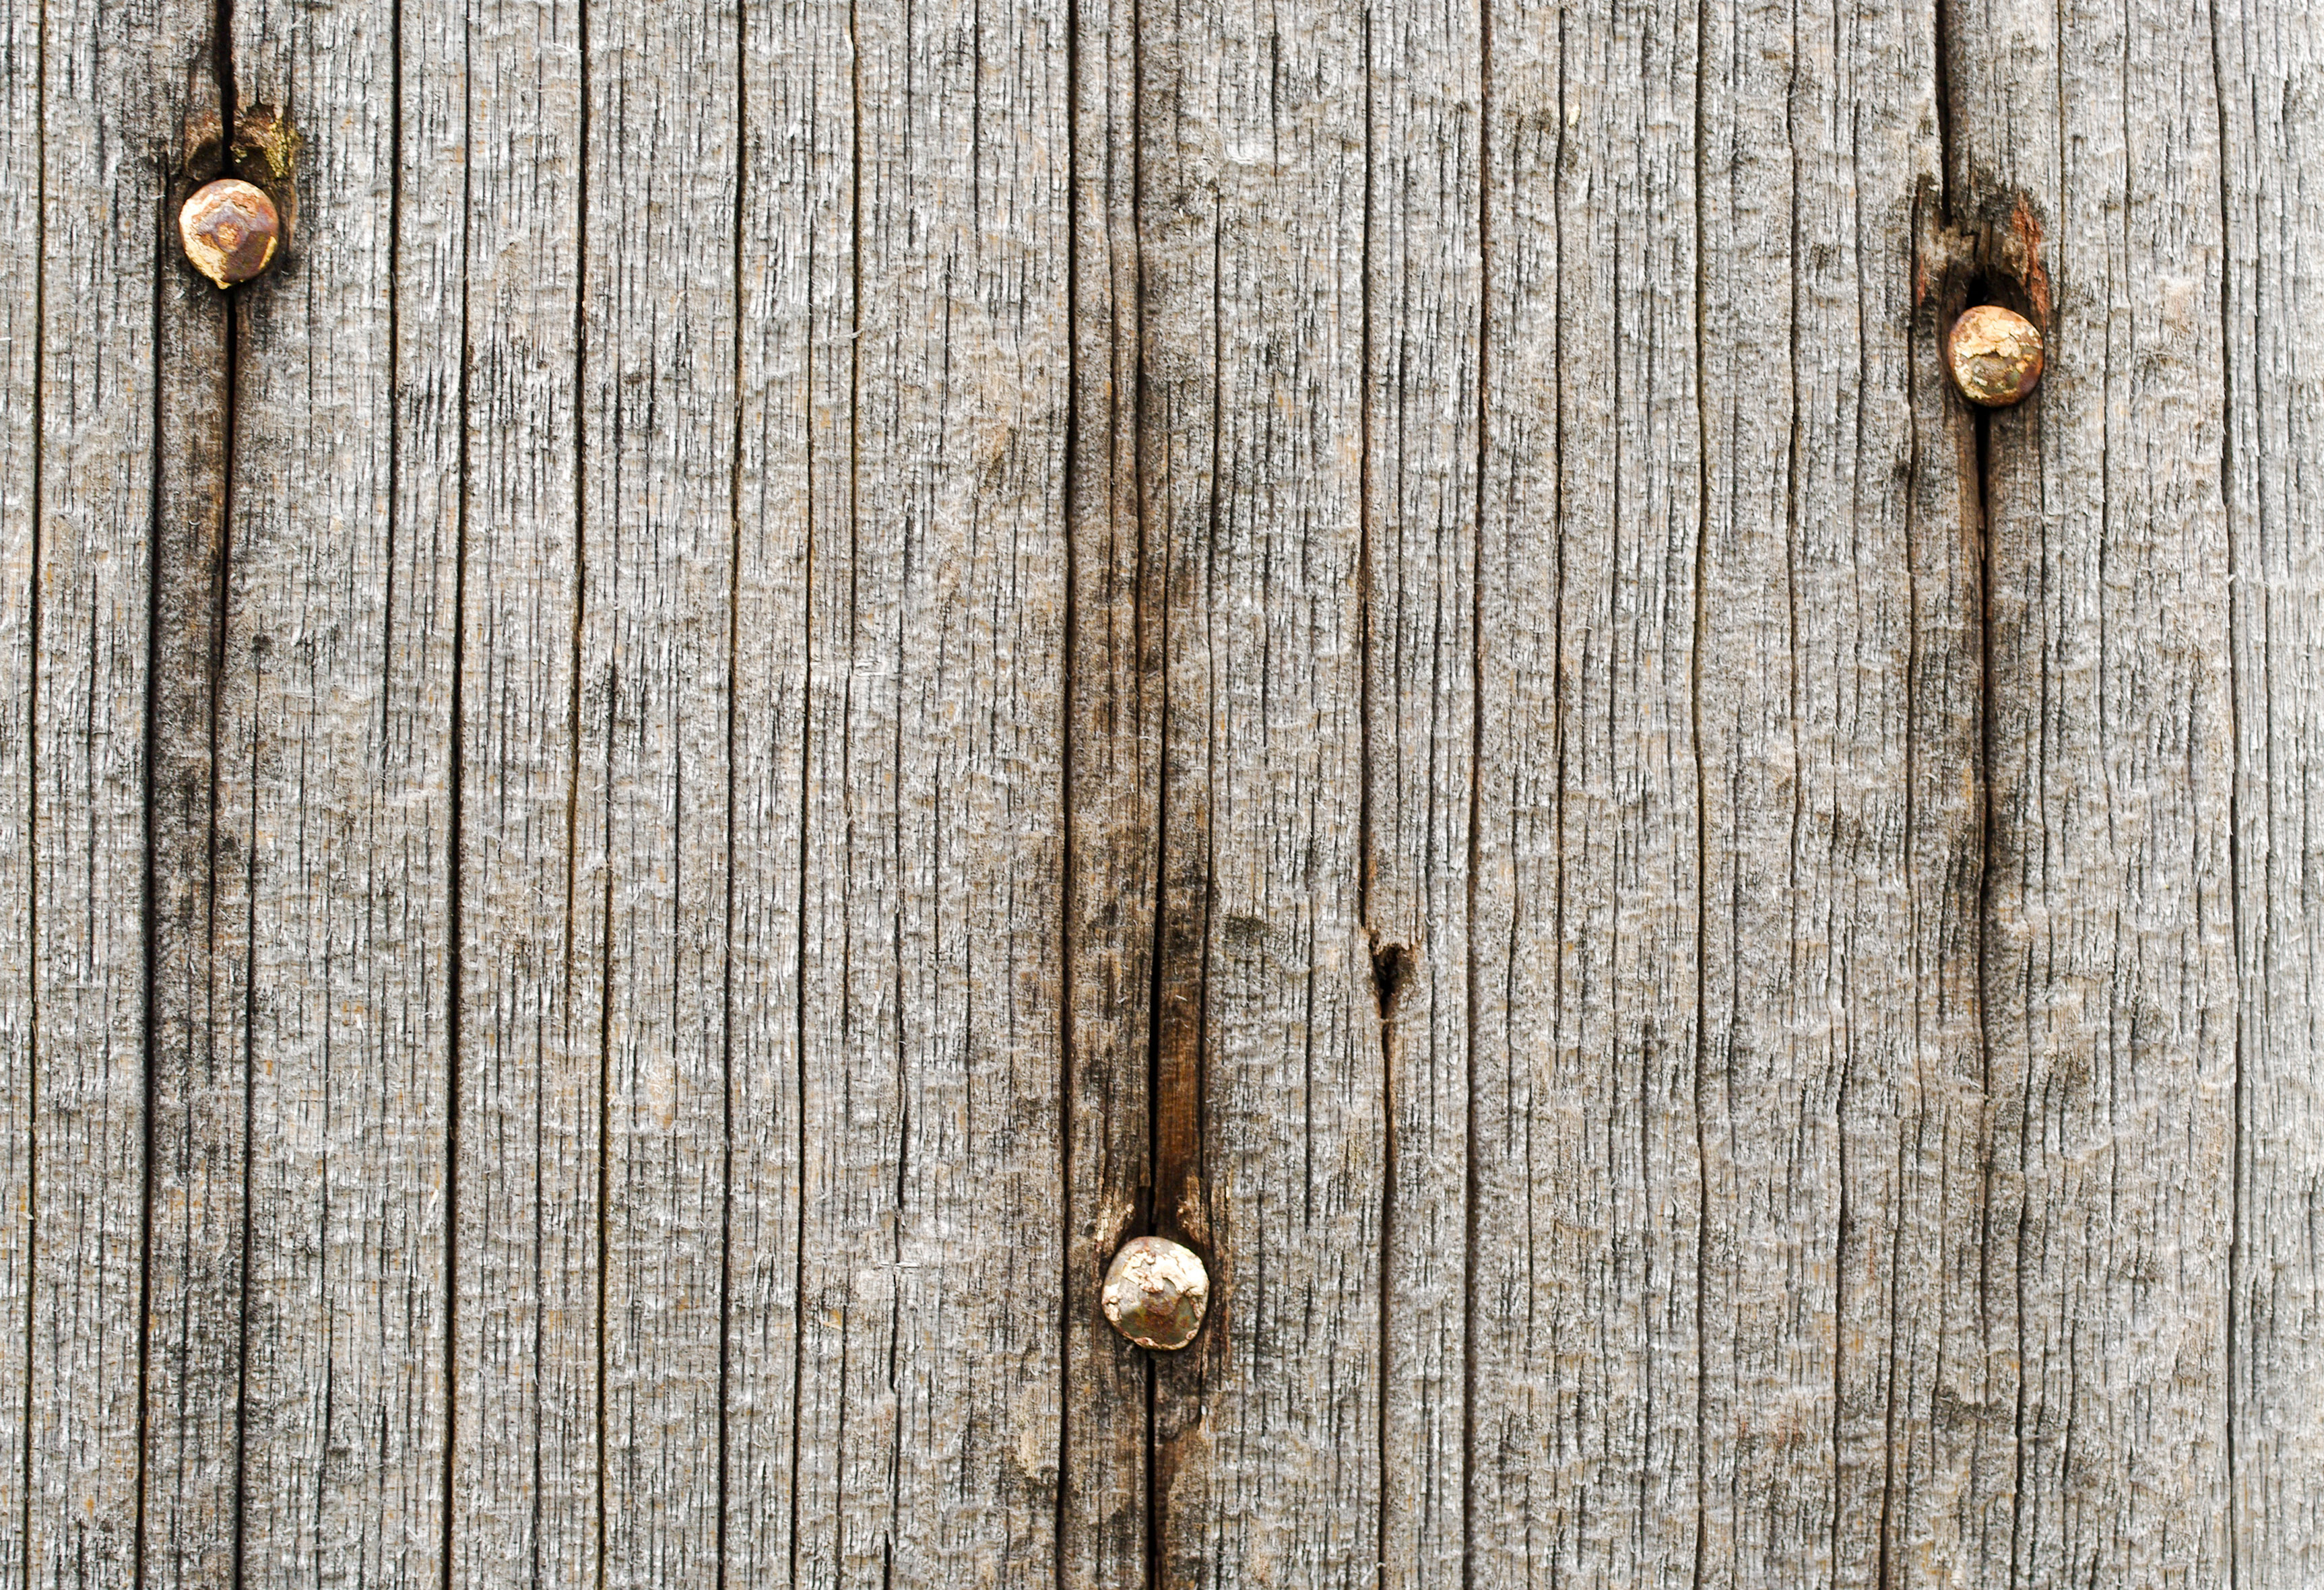 Mặc dù được sử dụng từ rất lâu đời, thế nhưng các loại textures gỗ cổ luôn tạo nên sự đẹp đẽ và độc đáo của riêng chúng. Hãy cùng khám phá hình ảnh gỗ cũ này để hiểu rõ hơn về sự tuyệt vời của loại vật liệu này.